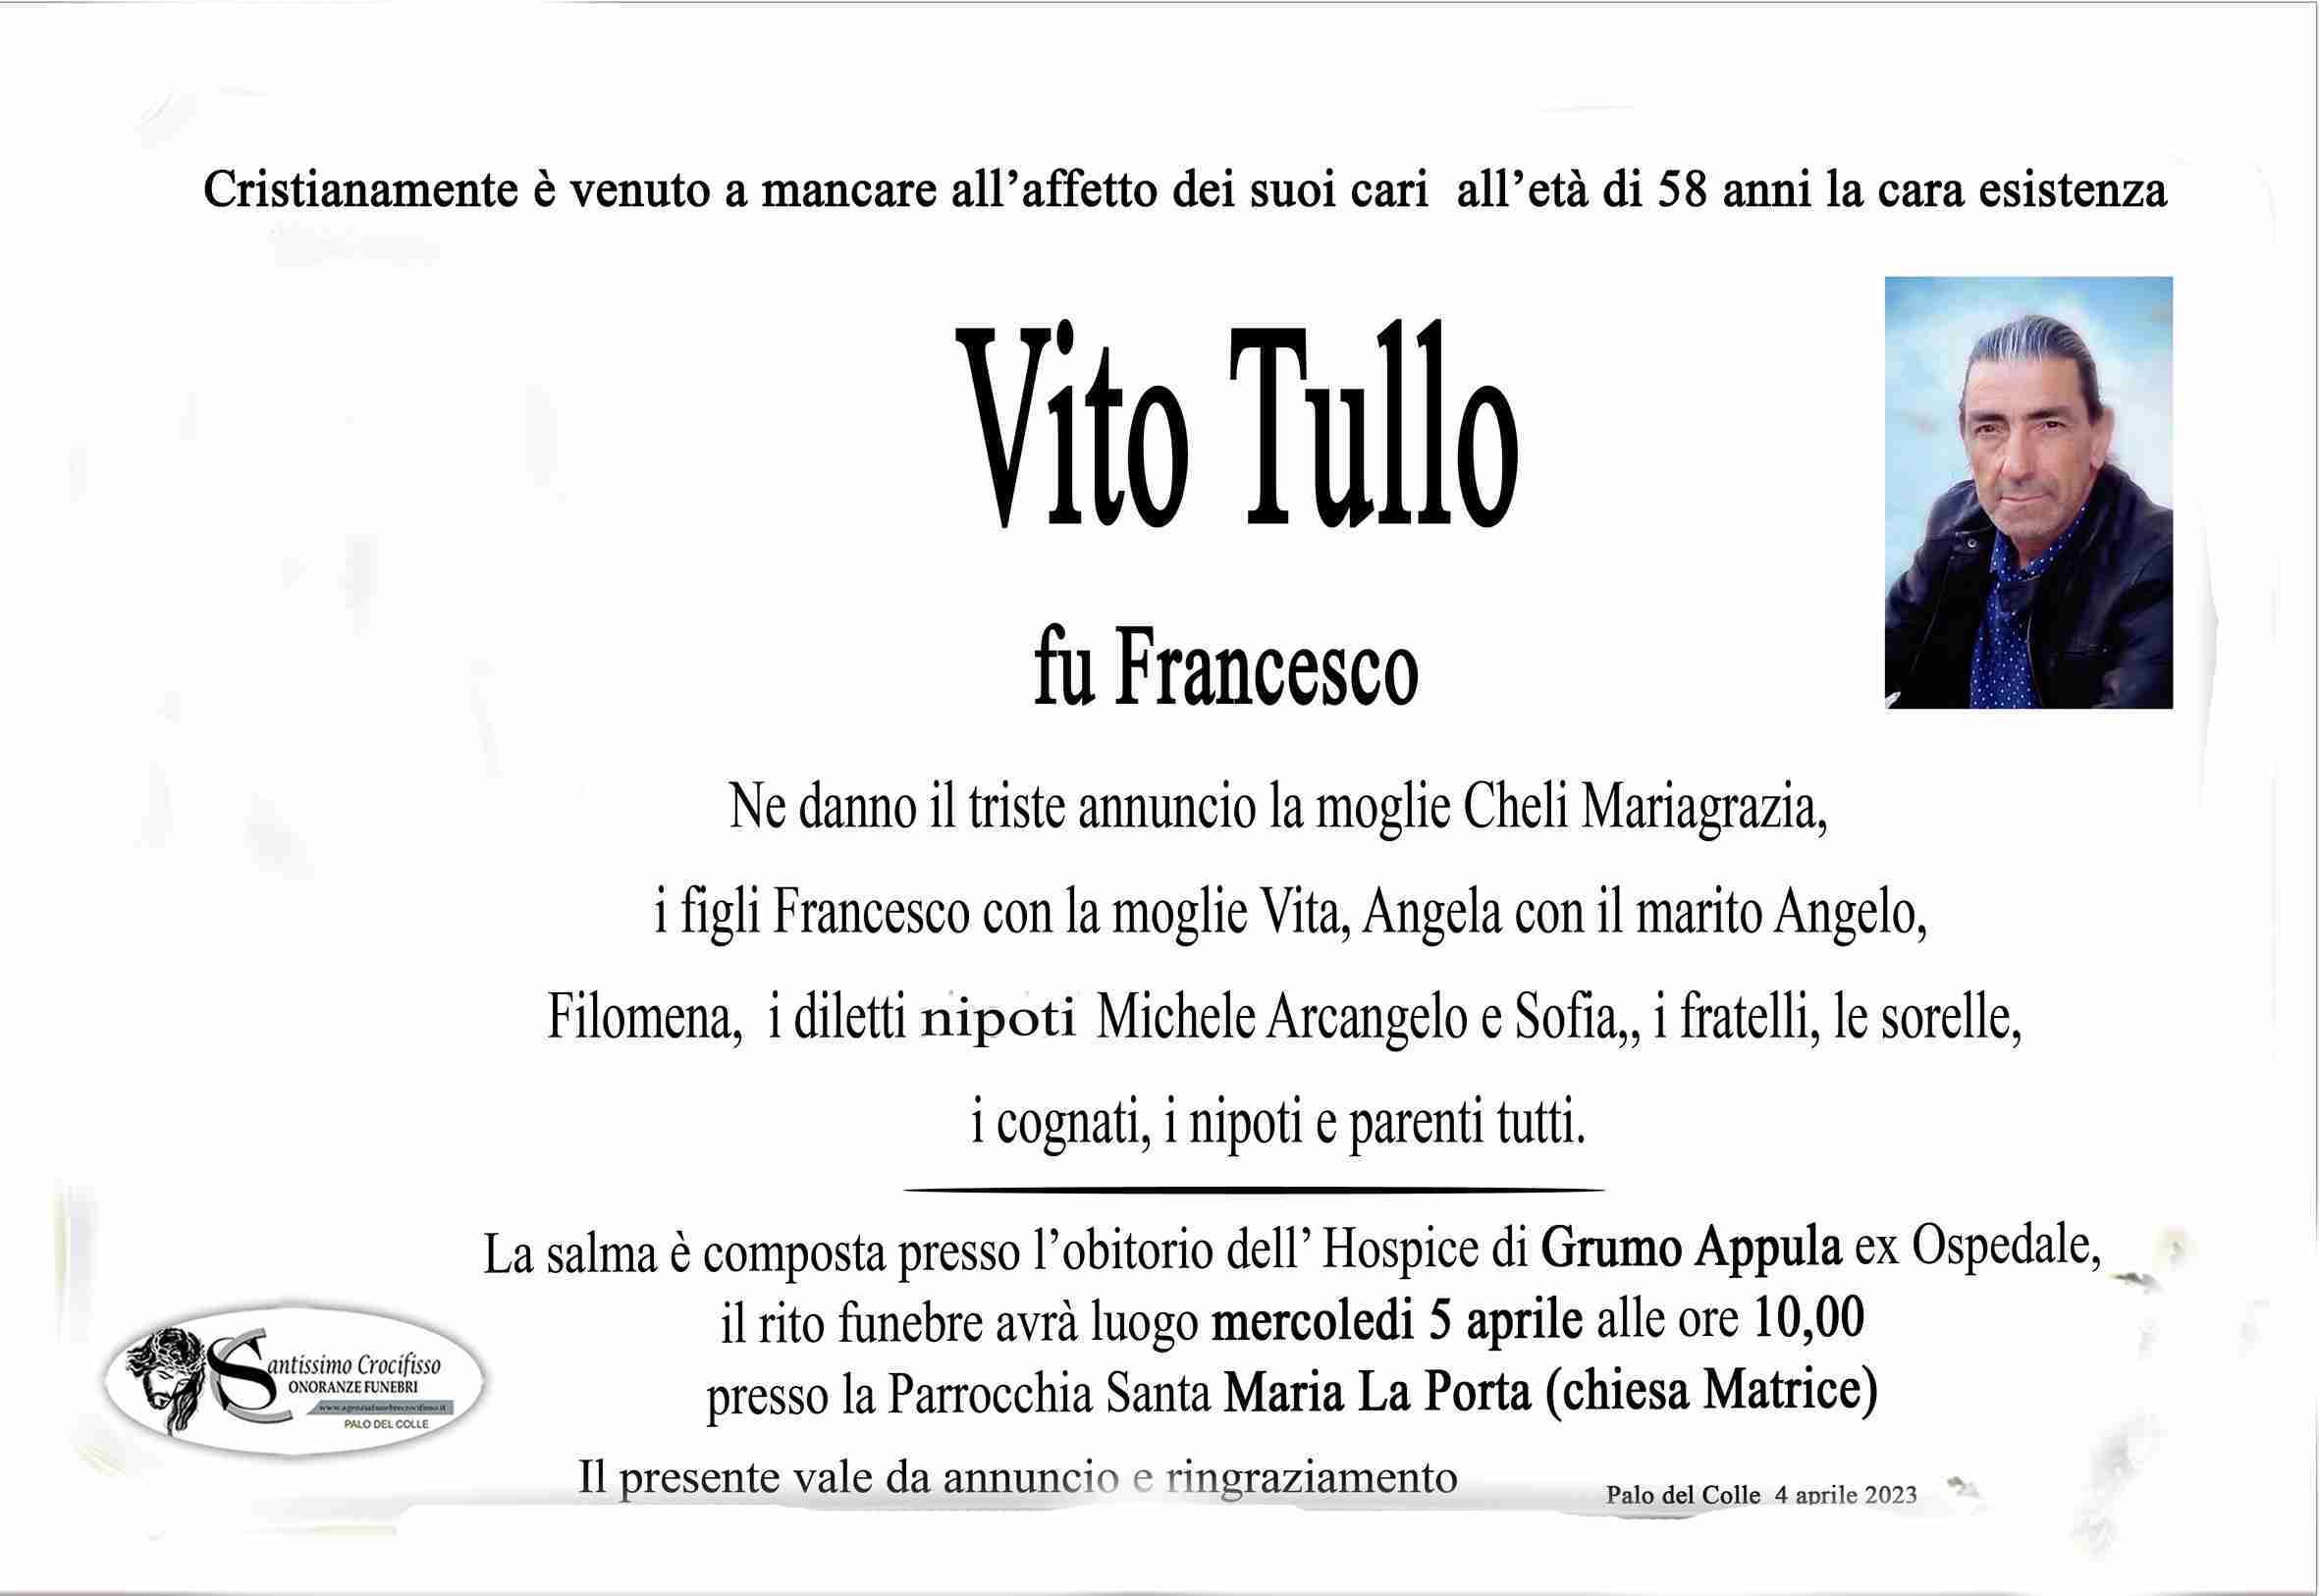 Vito Tullo